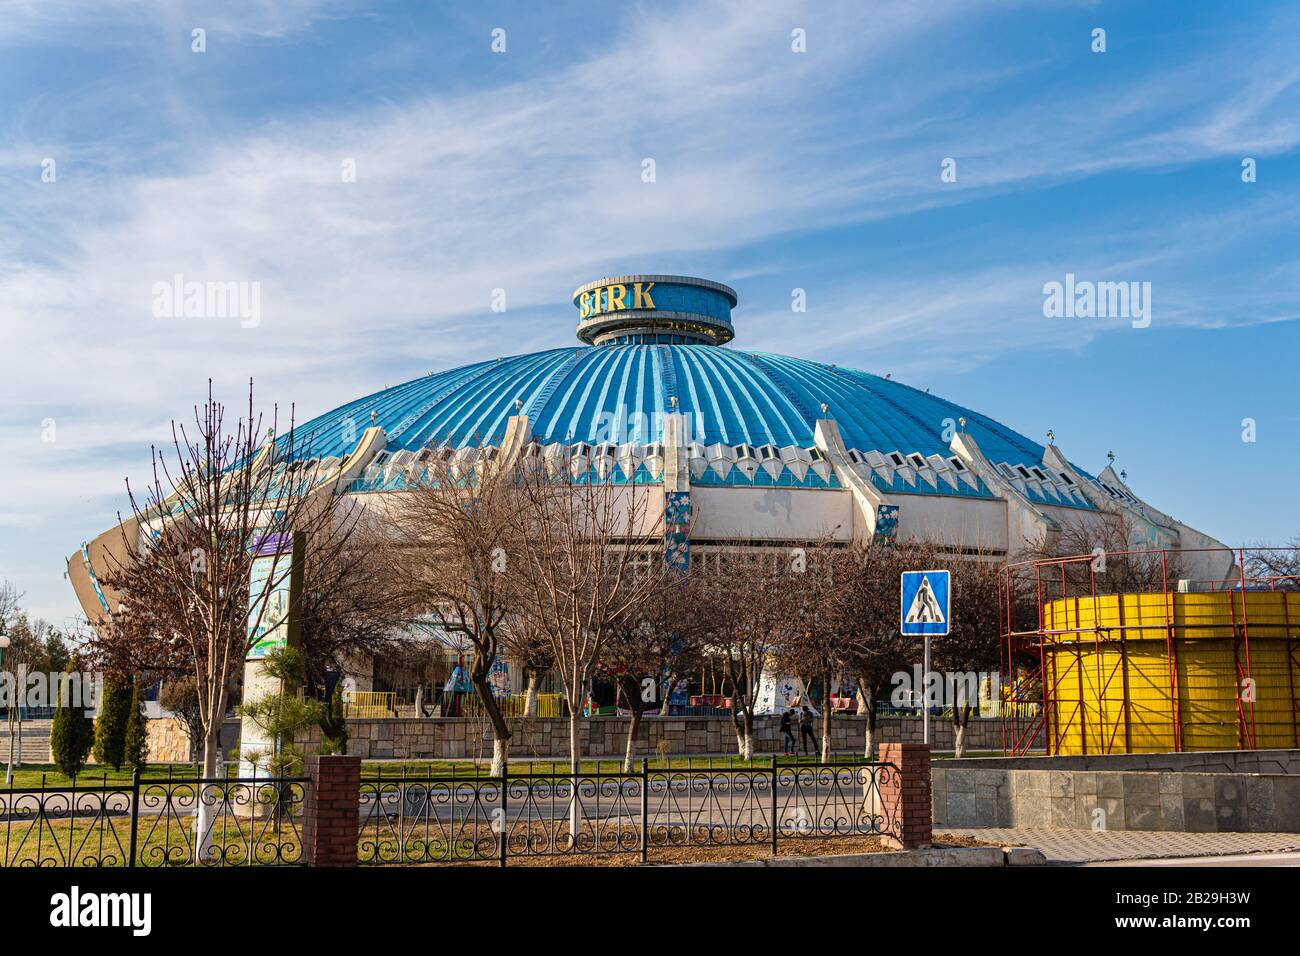 Tachkent, Ouzbékistan - 01 mars 2020: Édifice du cirque dans la capitale de l'Ouzbékistan - Tachkent, tir moyen Banque D'Images